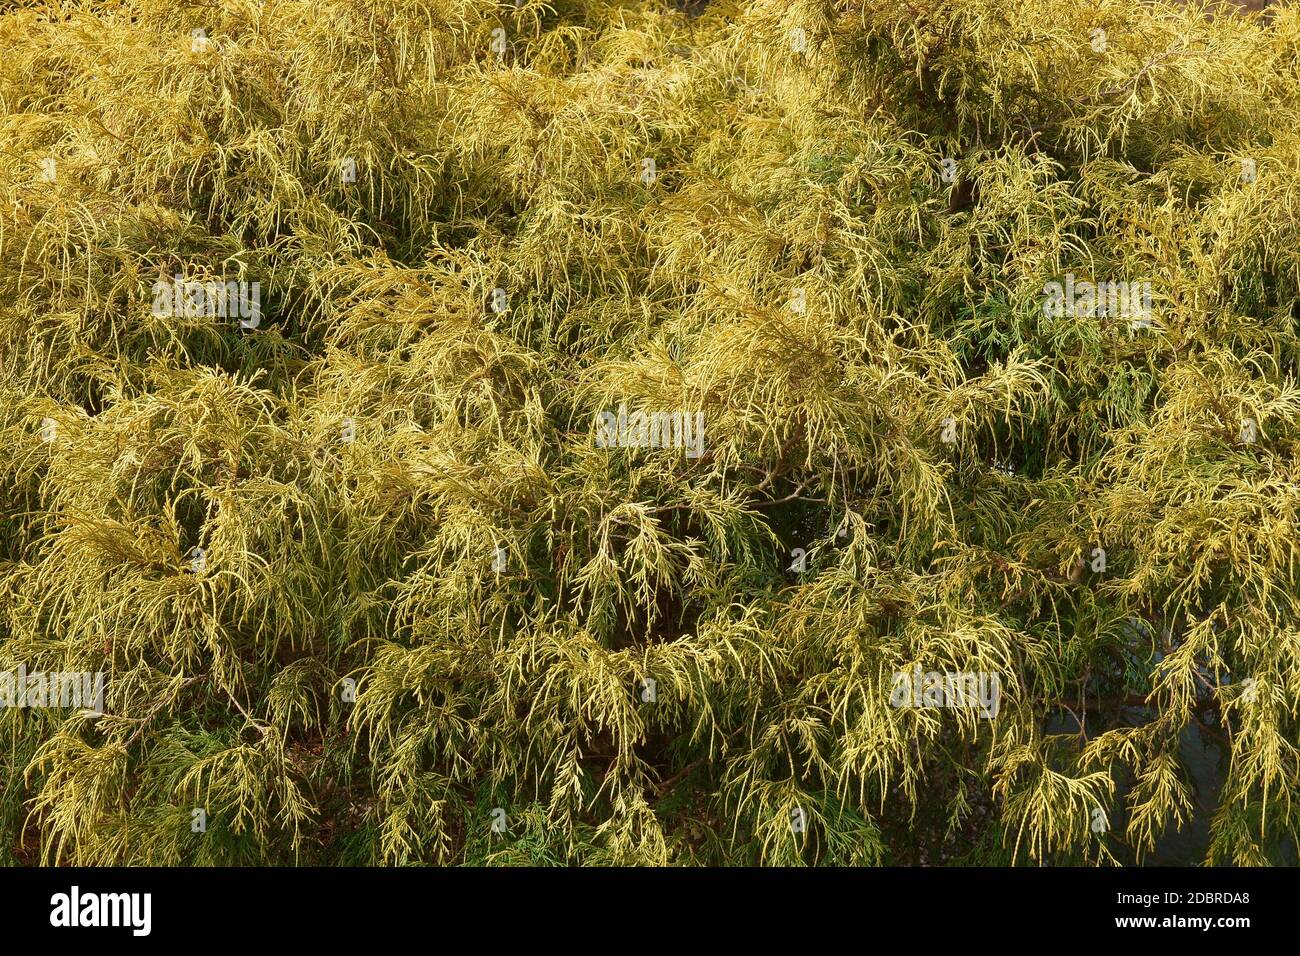 Gold dwarf threadleaf false cypress (Chamaecyparis pisifera Filifera Aurea Nana) Stock Photo